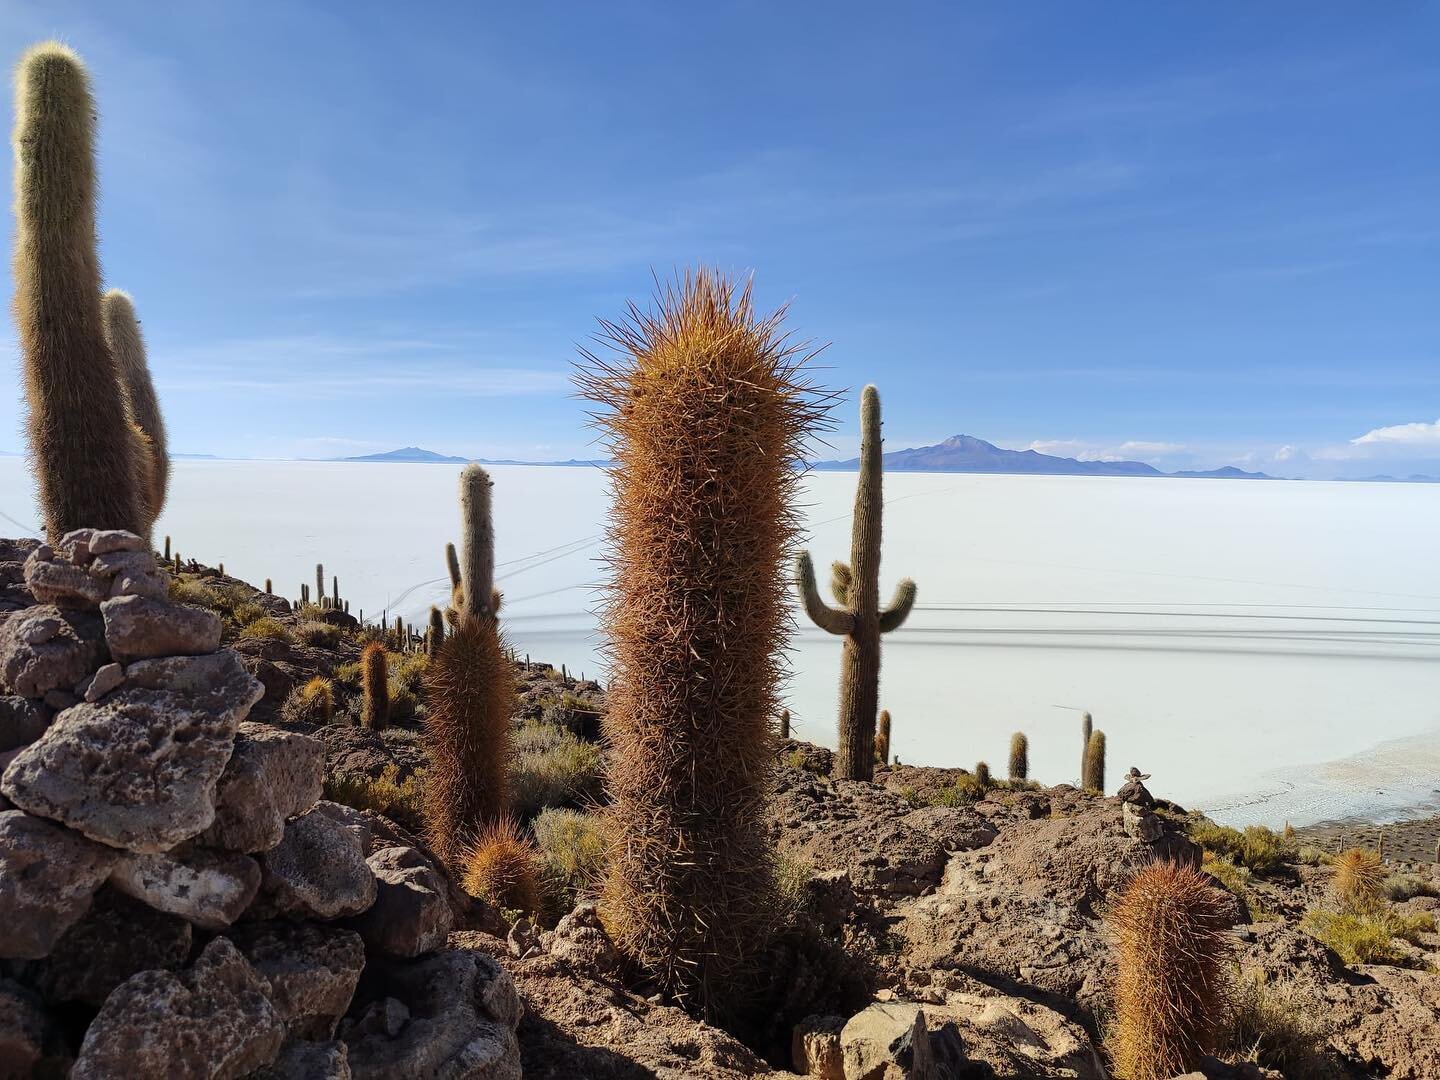 Encore un site incroyable !Le salar d&rsquo;Uyuni: Situ&eacute; sur les hauts plateaux du sud-ouest de la Bolivie. 
La disparition du lac pr&eacute;historique Tauca,
14 000 ans auparavant, a donn&eacute; naissance &agrave; ce salar. Cette &eacute;ten